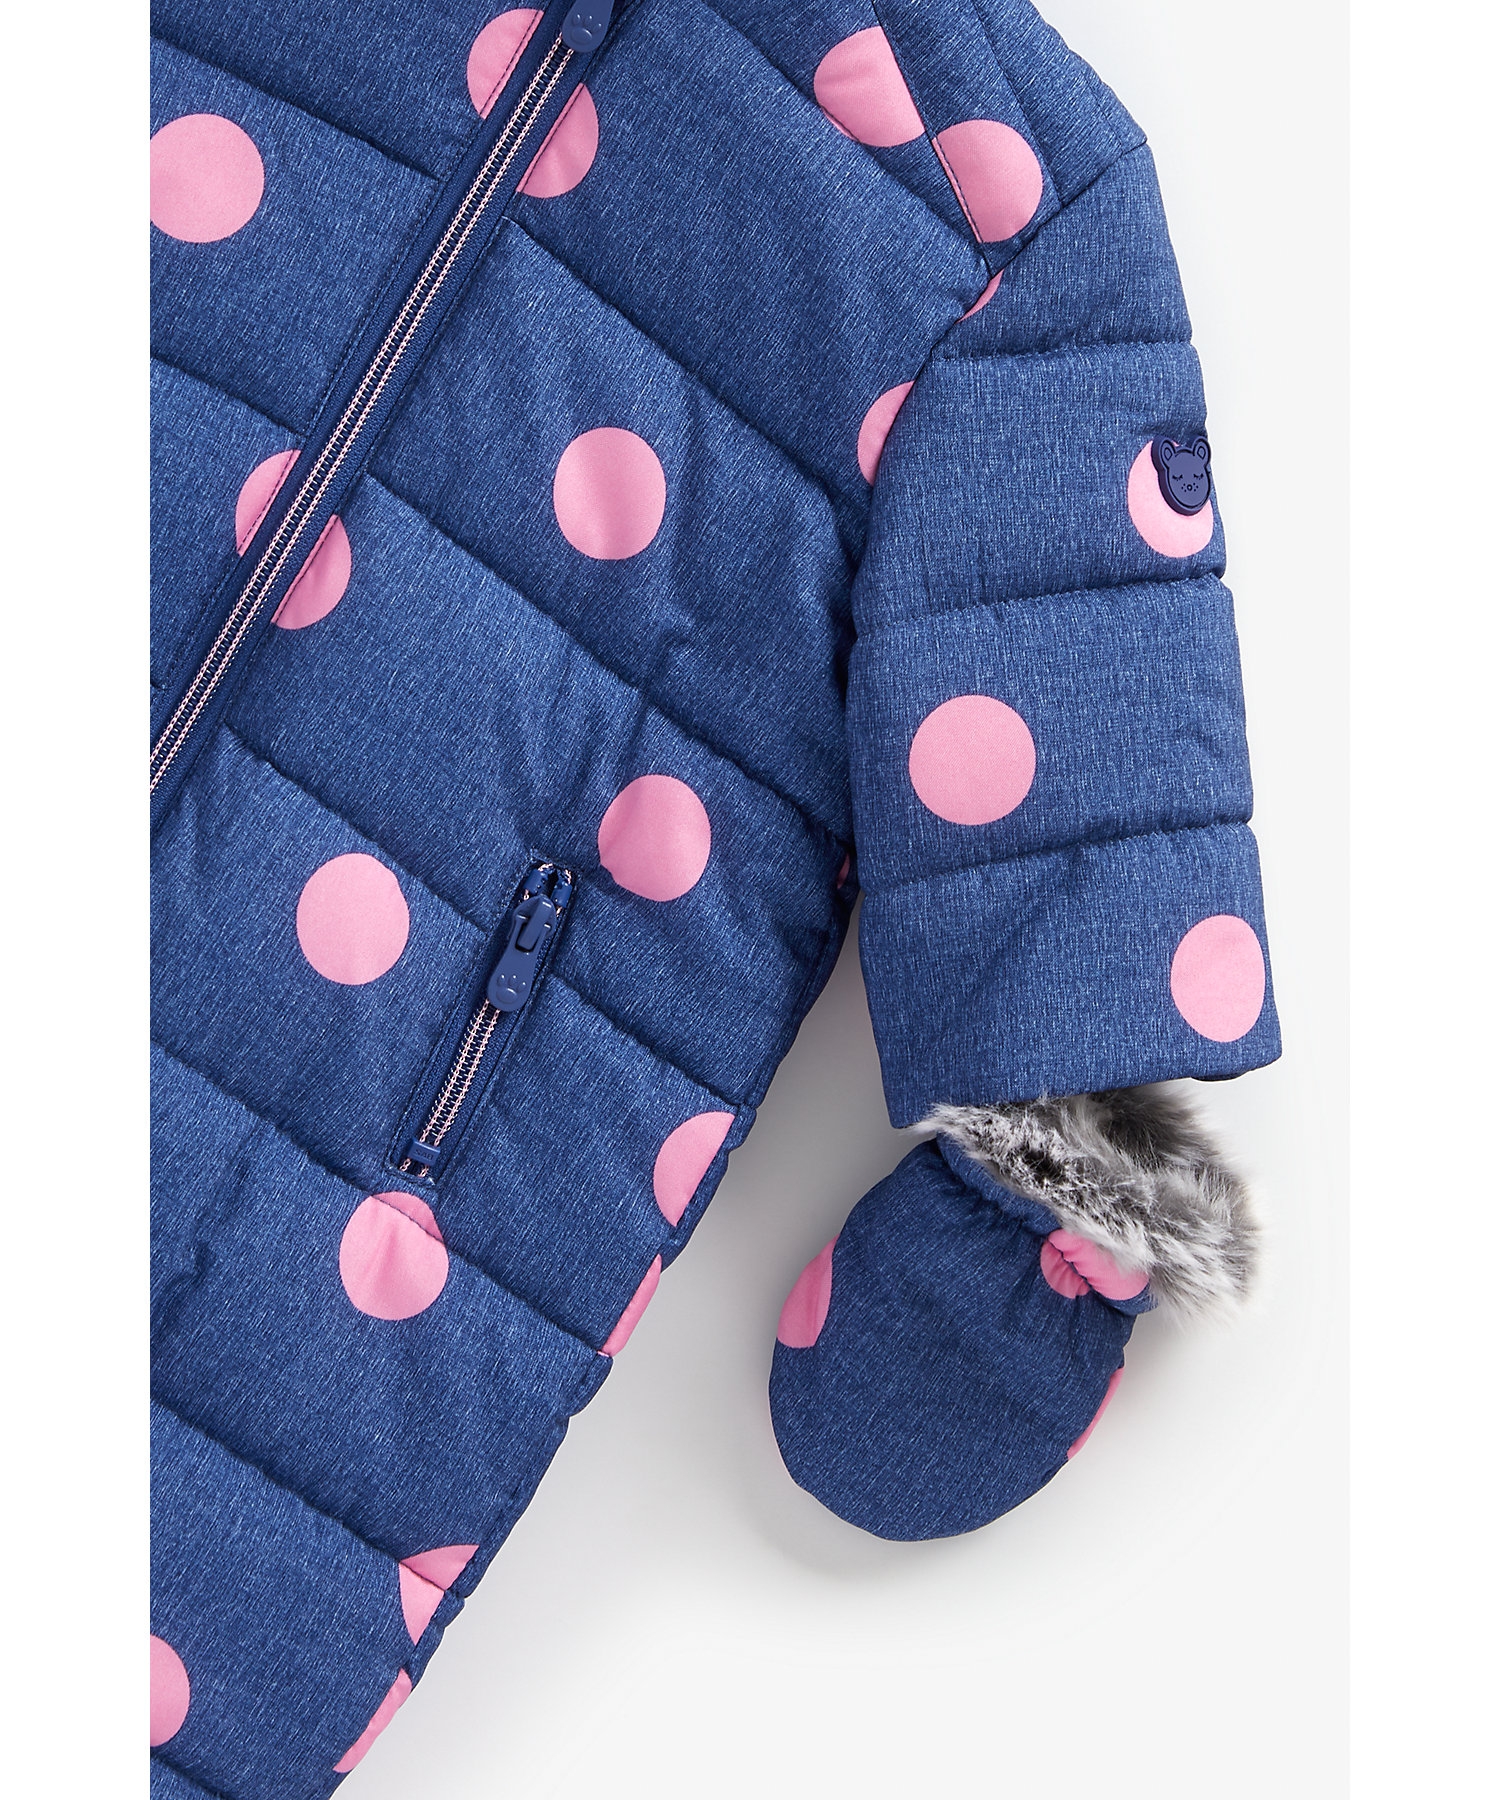 Mothercare | Girls Full Sleeves Snowsuit Polka Dot Print - Navy 3